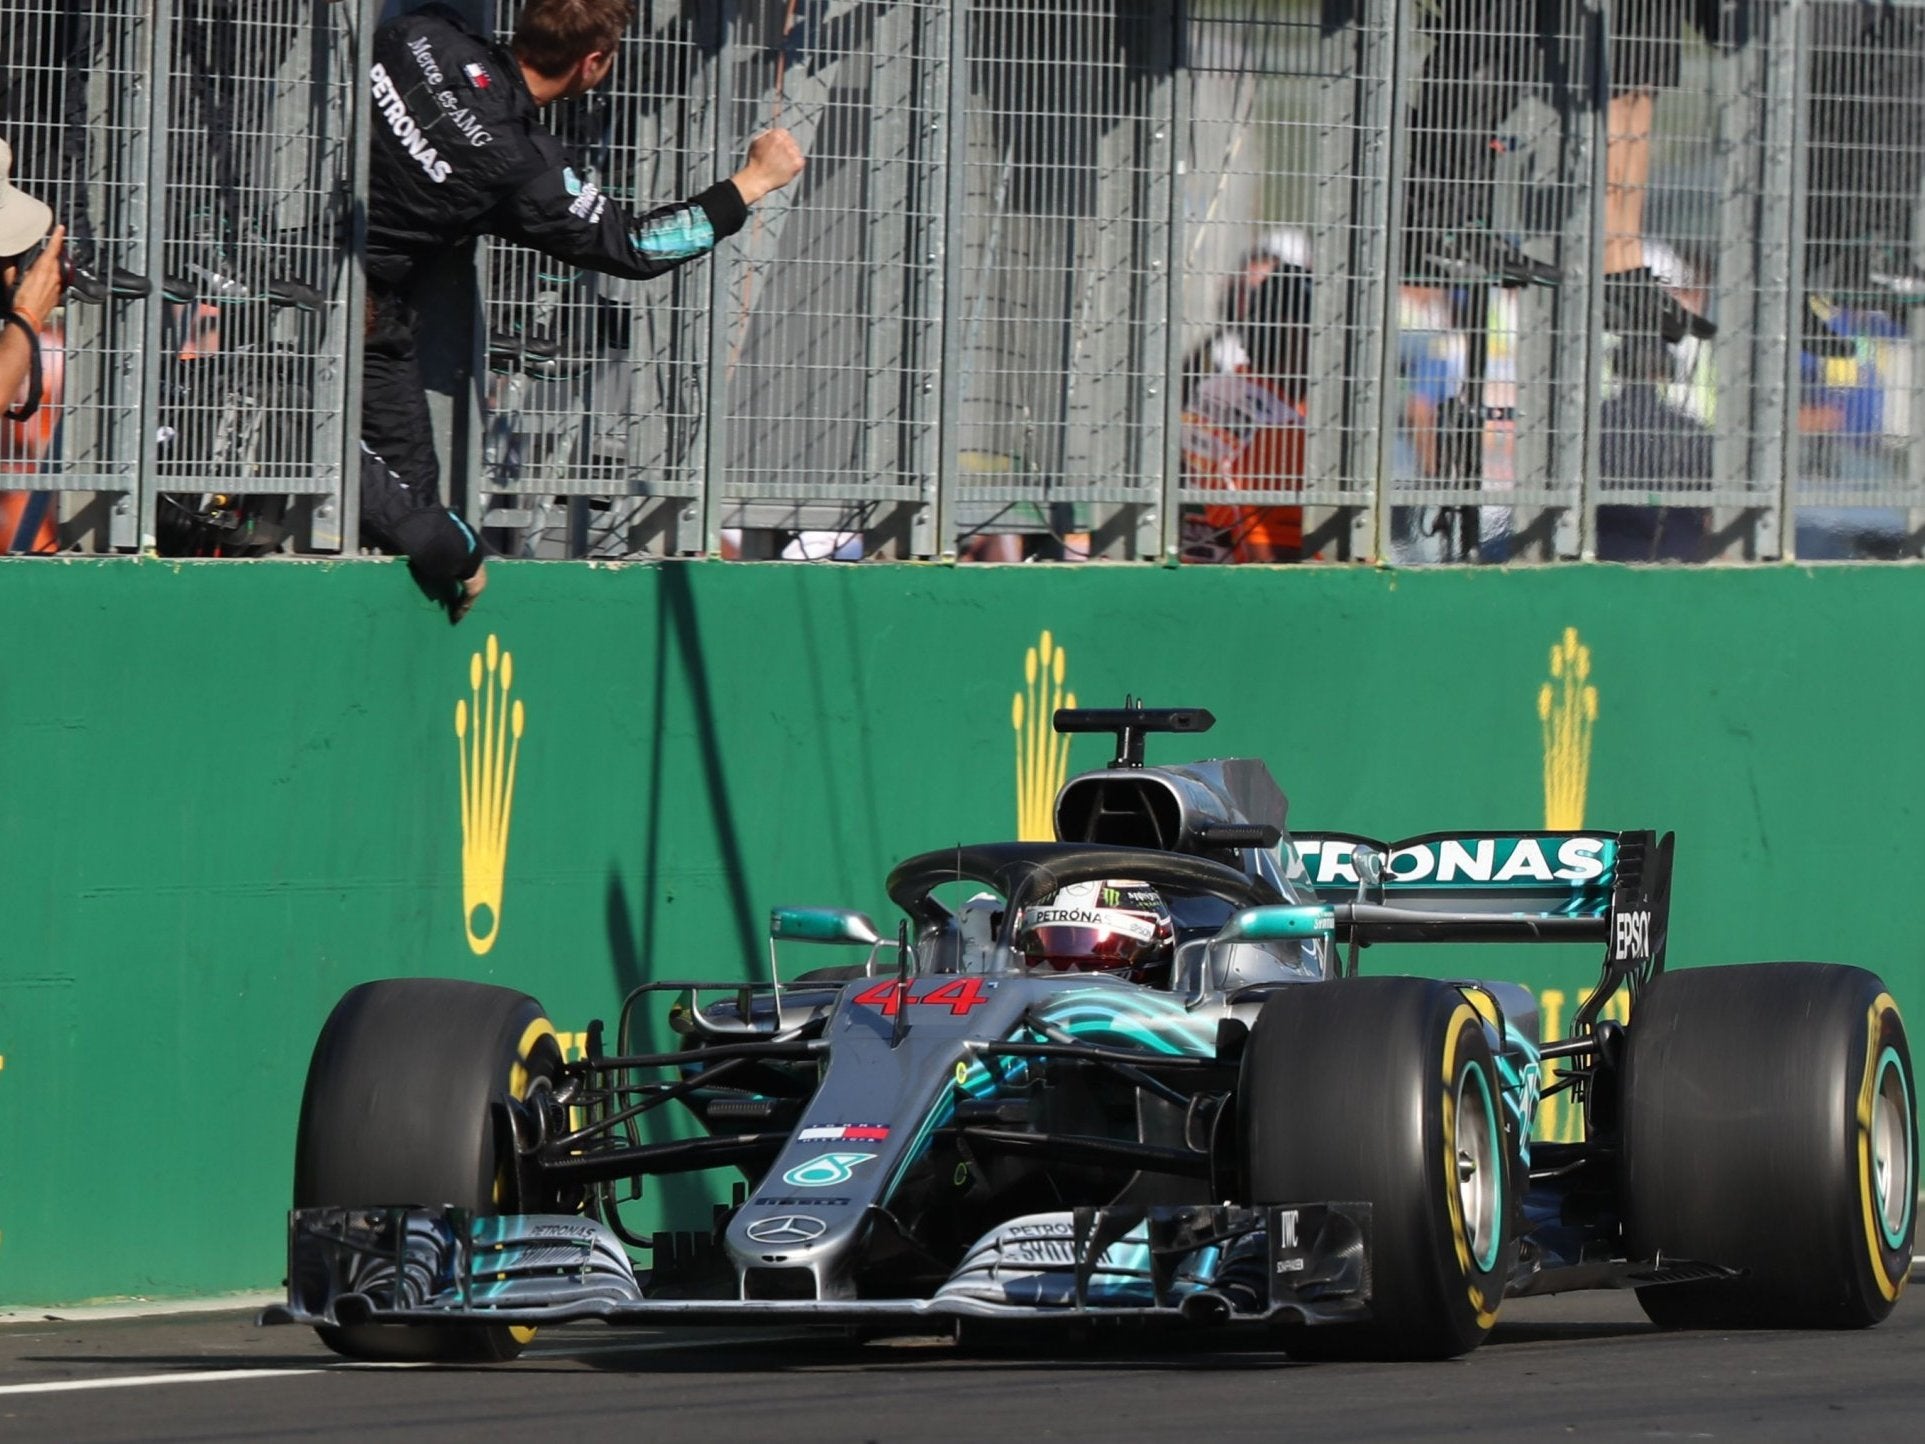 Hamilton crosses the line to win the Hungarian Grand Prix